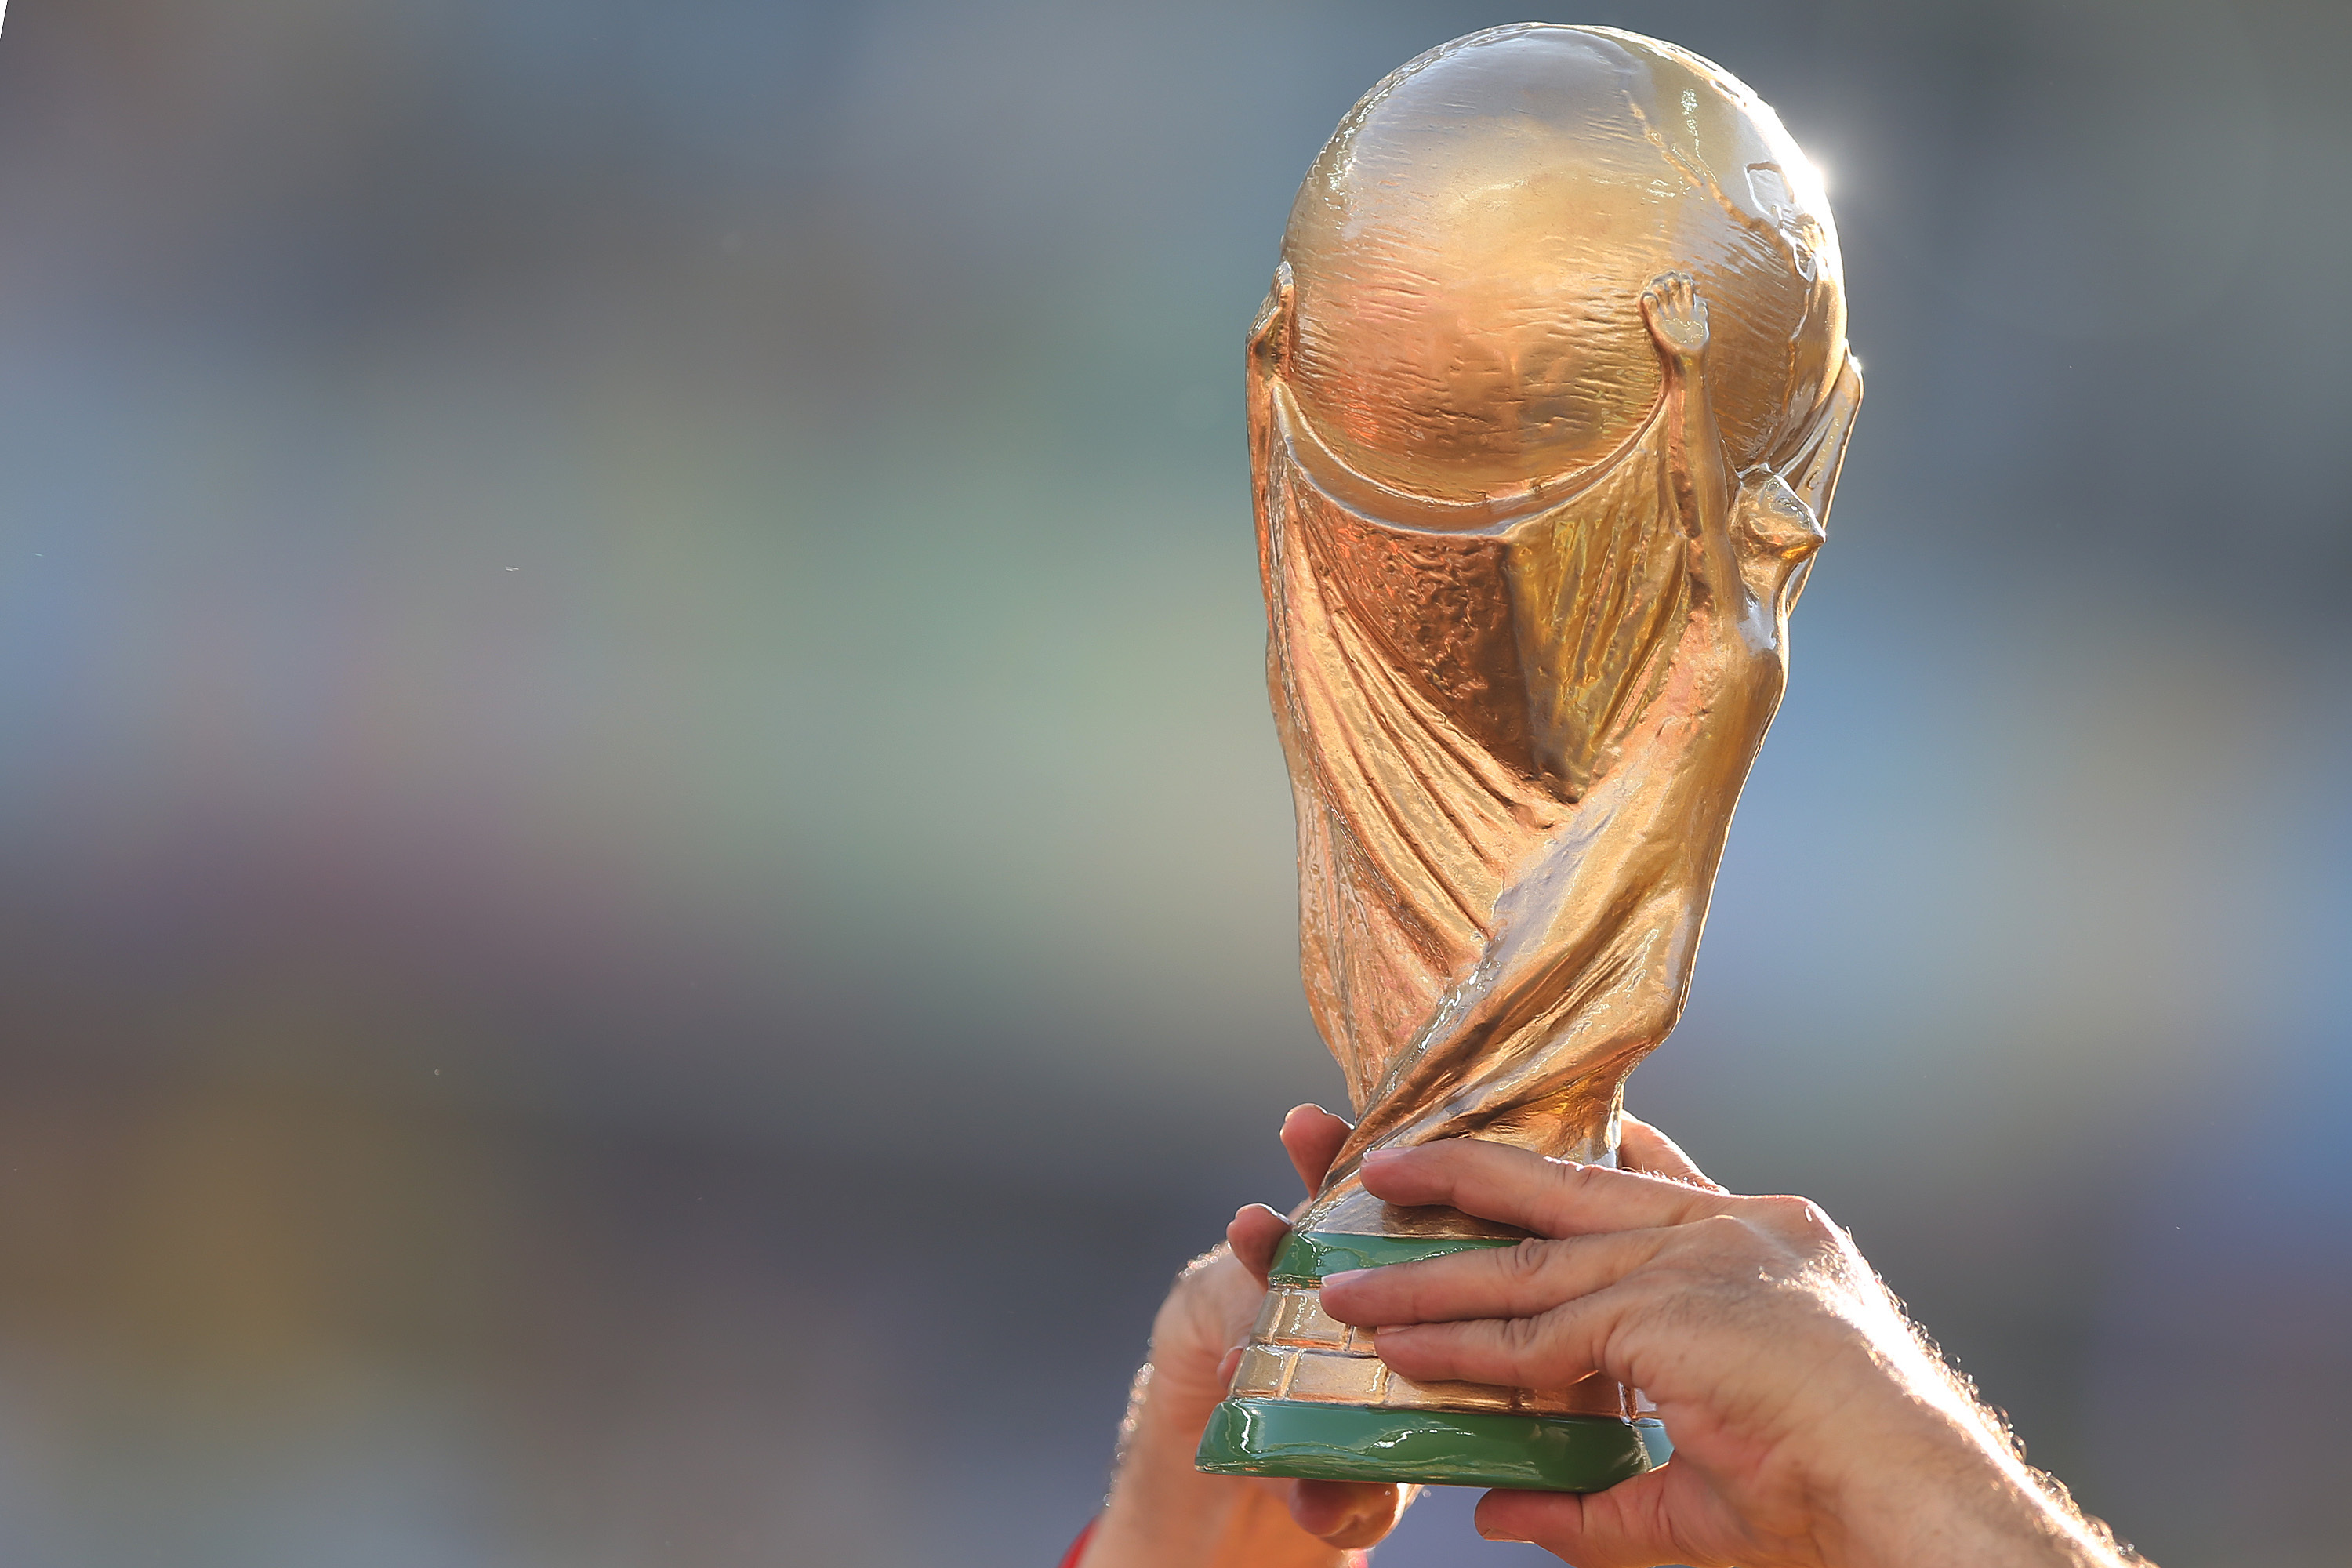 Puchar Mistrzostw Świata w Piłce Nożnej FIFA - wartość i historia - Historia Mistrzostwa świata W Piłce Nożnej